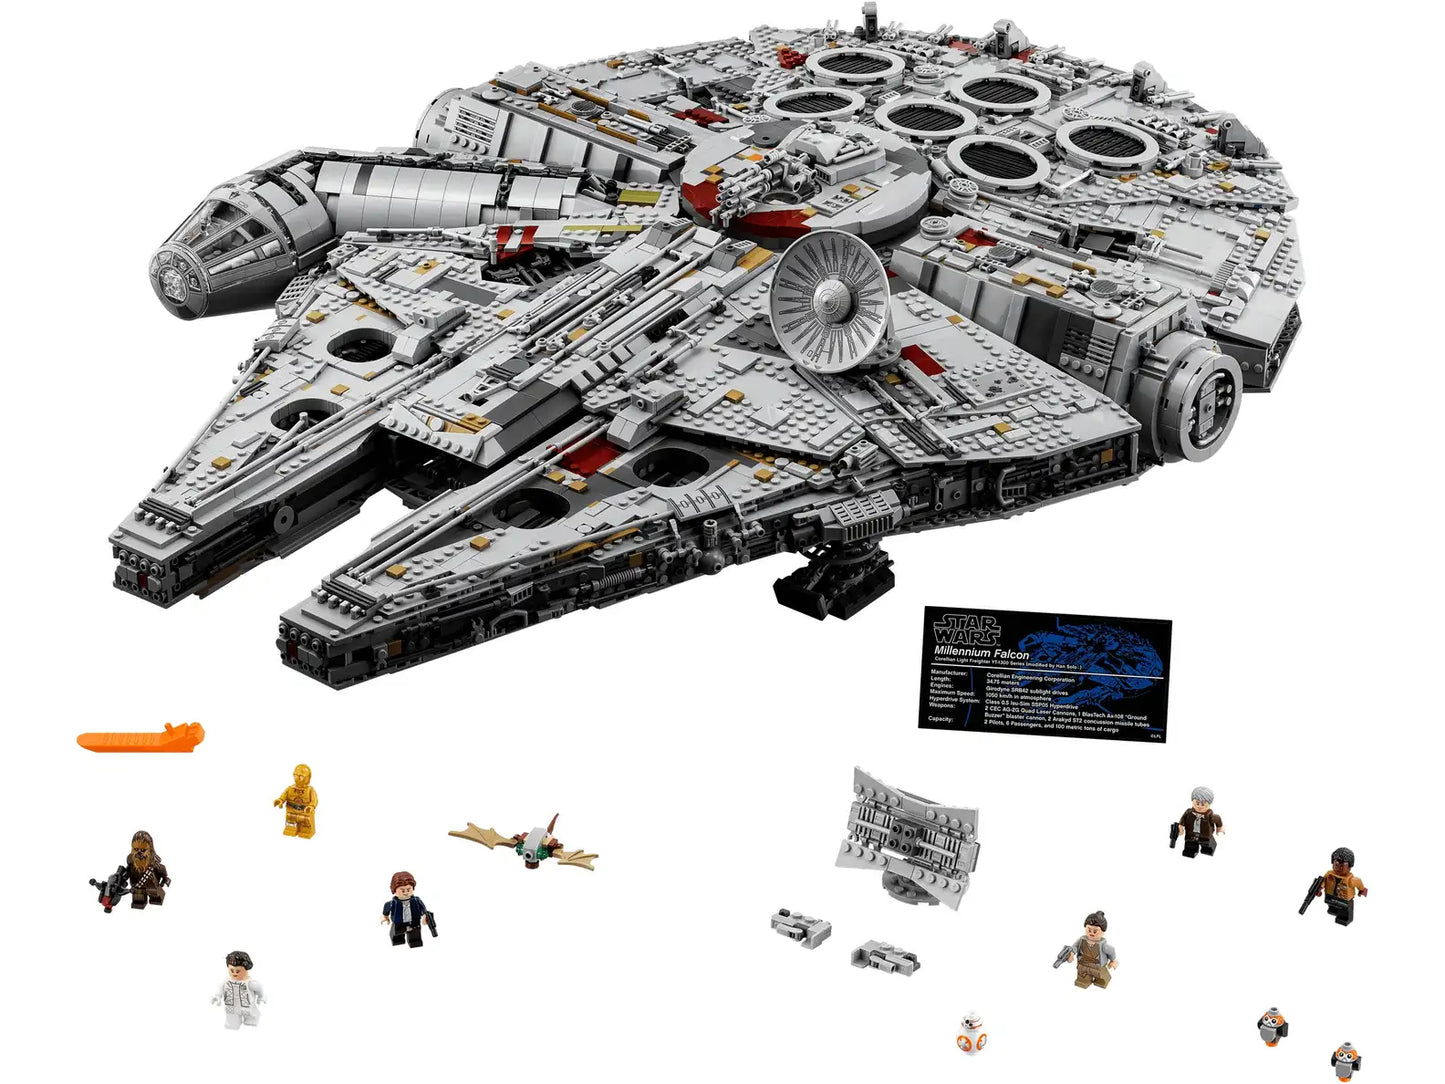 Lego - Star Wars Millennium Falcon 75192